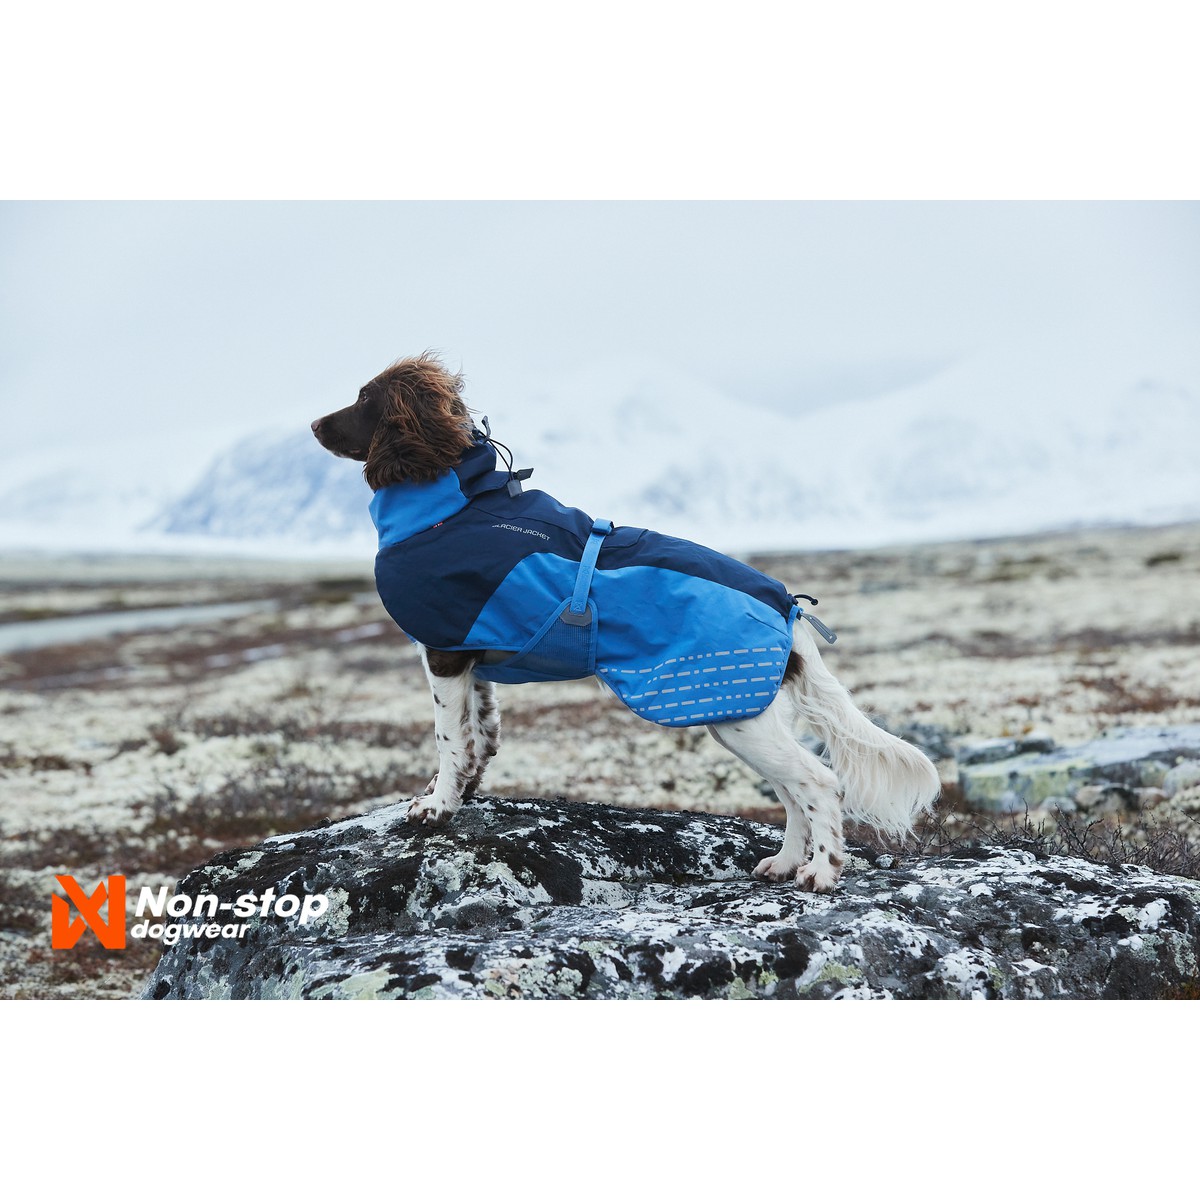 Non-Stop dogwear Glacier Manteau Glacier Jacket T36 Bleu azur foncé T36